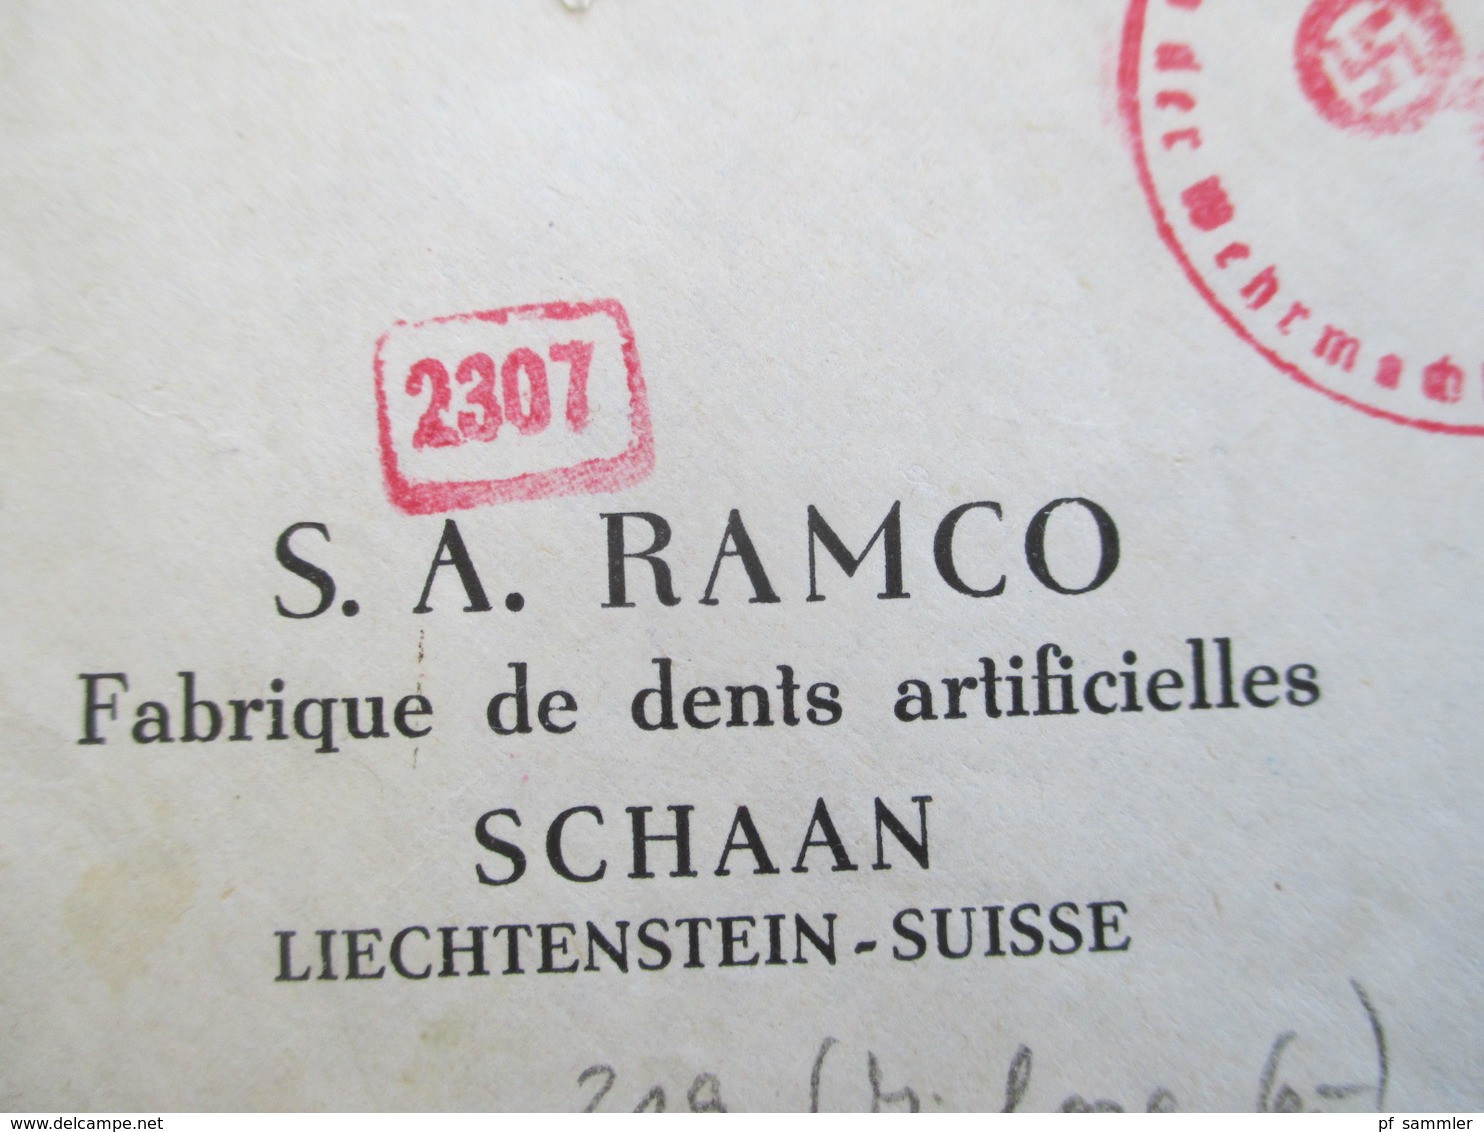 Liechtenstein 1943 Einschreiben mit OKW Mehrfachzensur S.A. Ramco Fabrique de dents artificielles / Vignette Kunstzahn